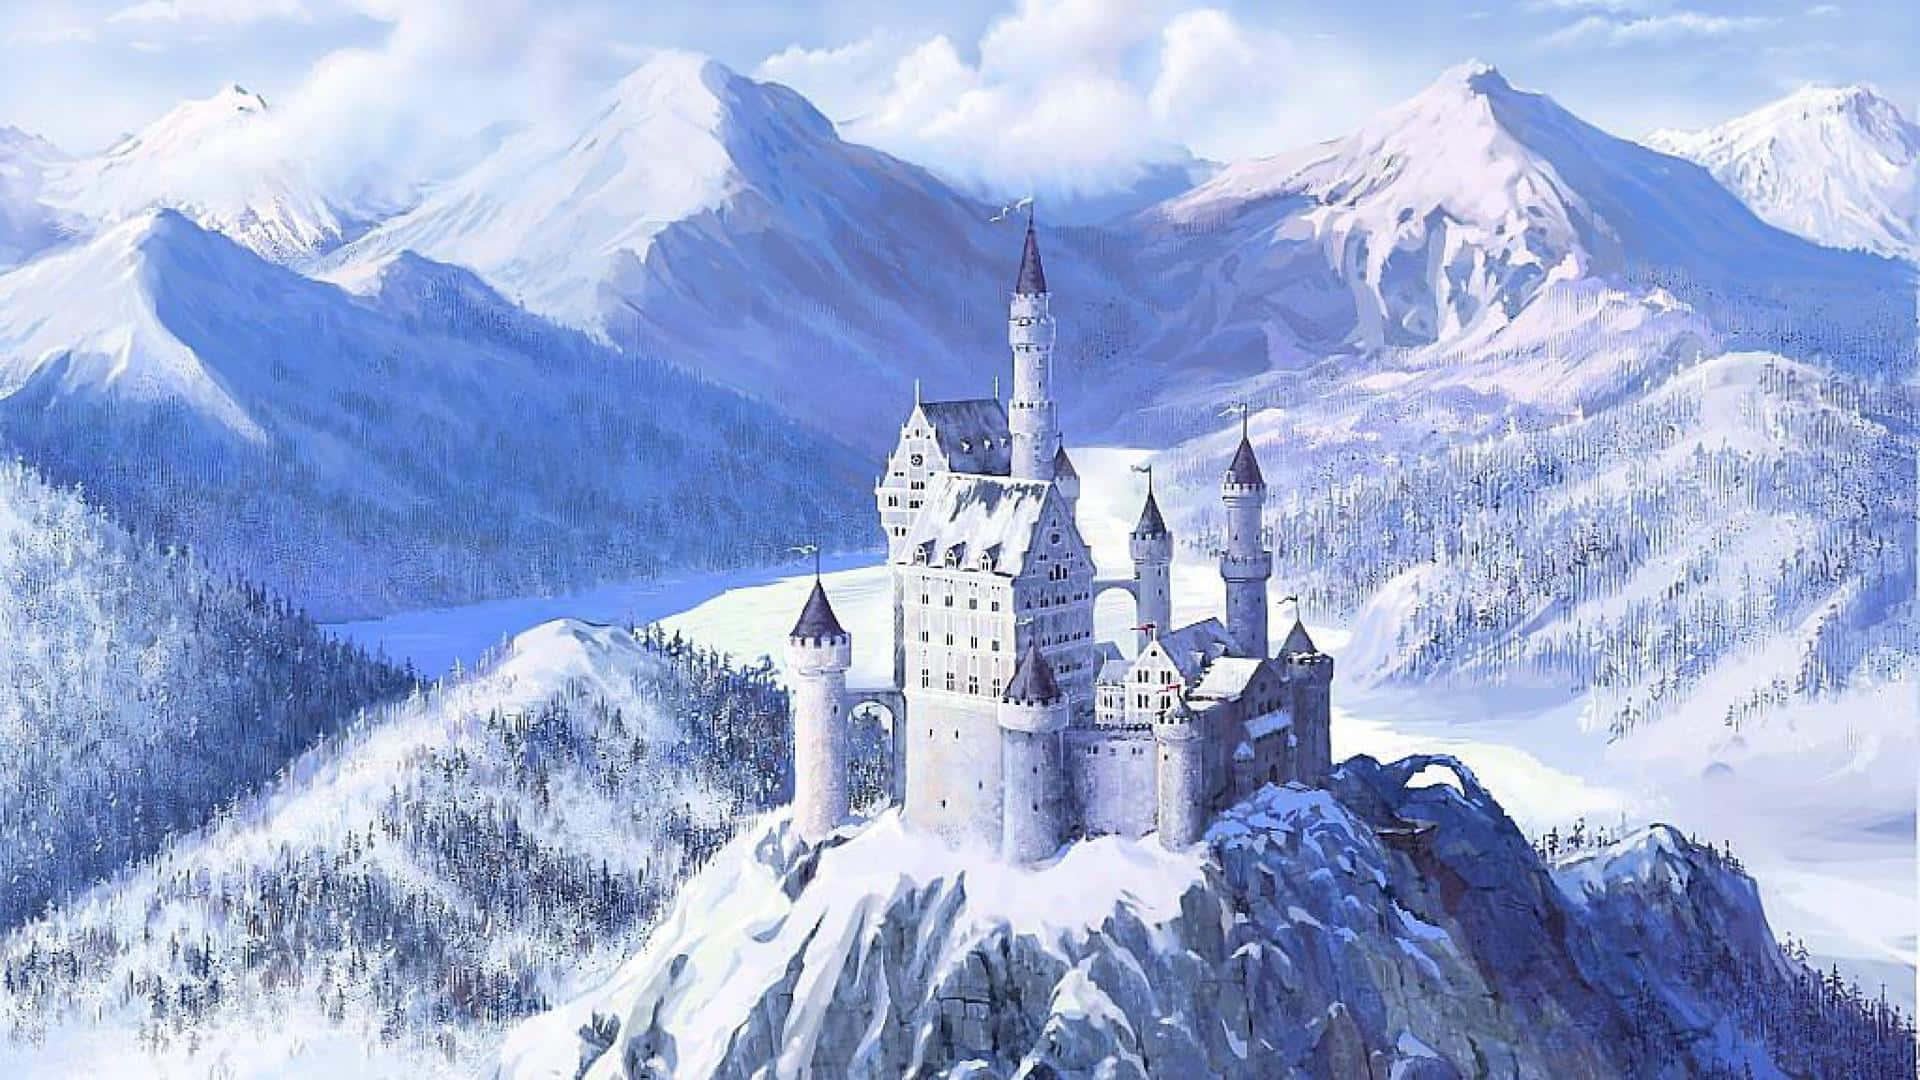 Machensie Eine Virtuelle Tour Durch Dieses Wunderschöne Schloss.